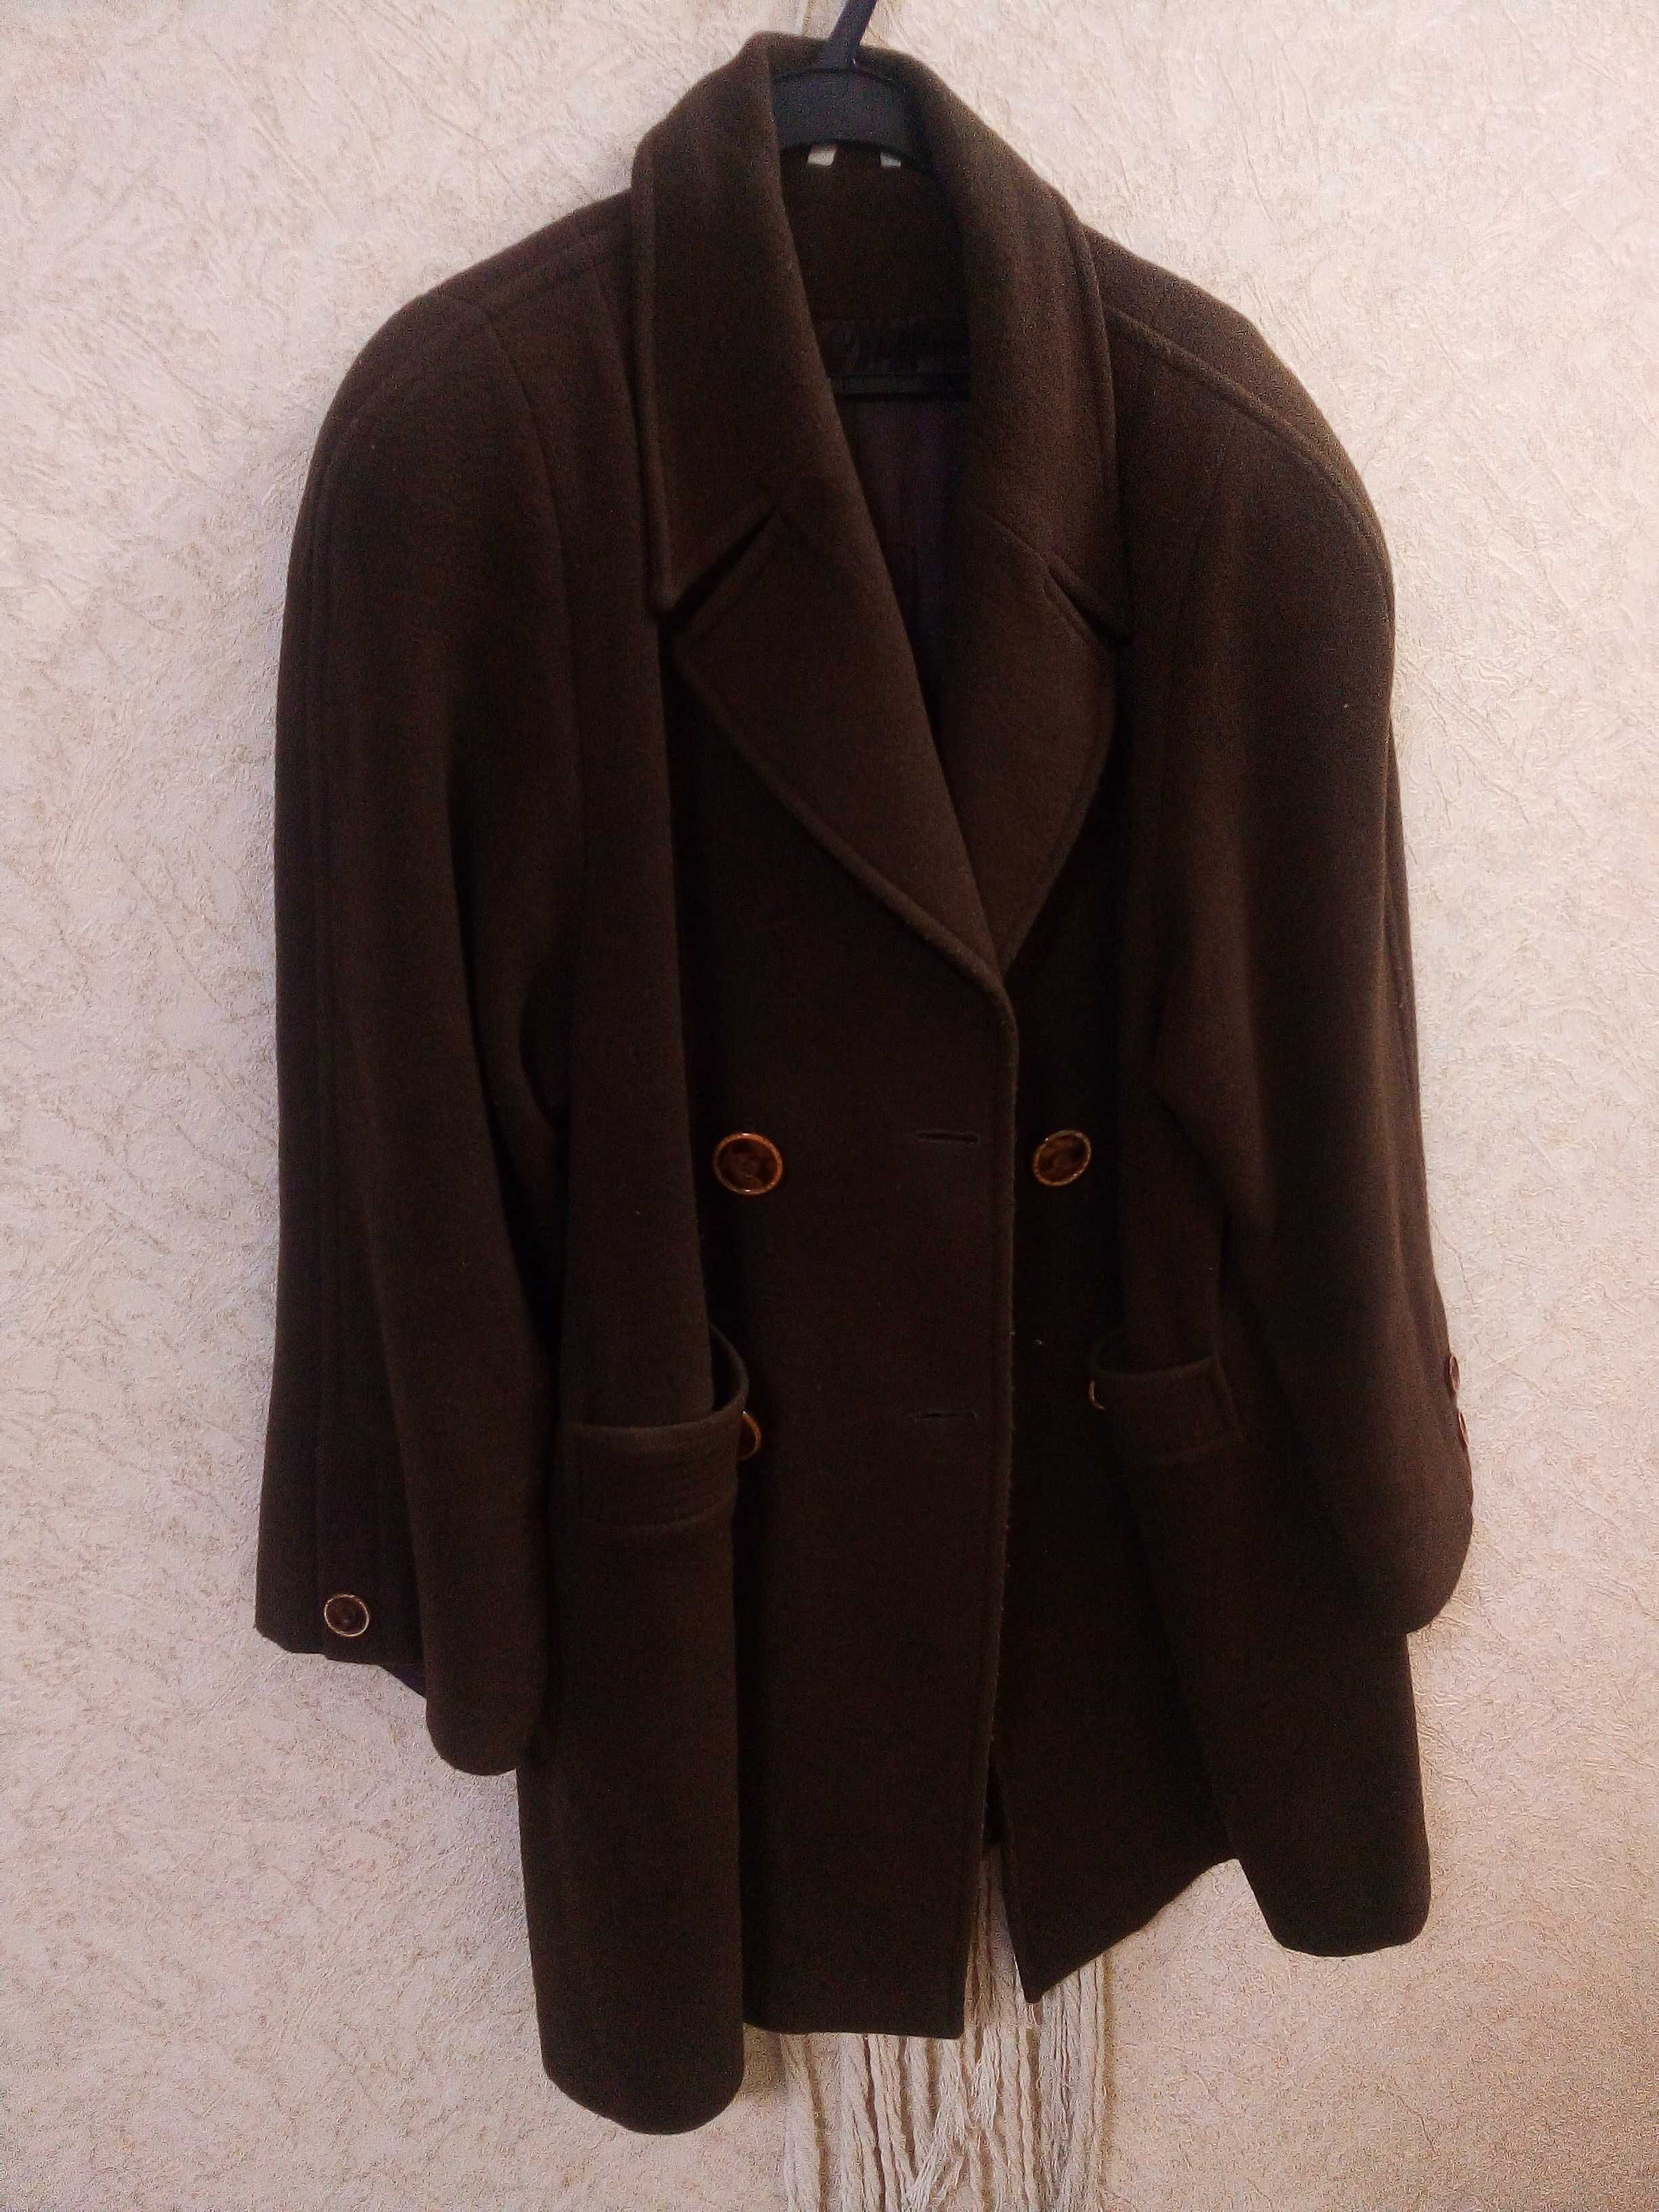 Теплое пальто пиджак(кашемир) пр-во Турция.Размер 50-52